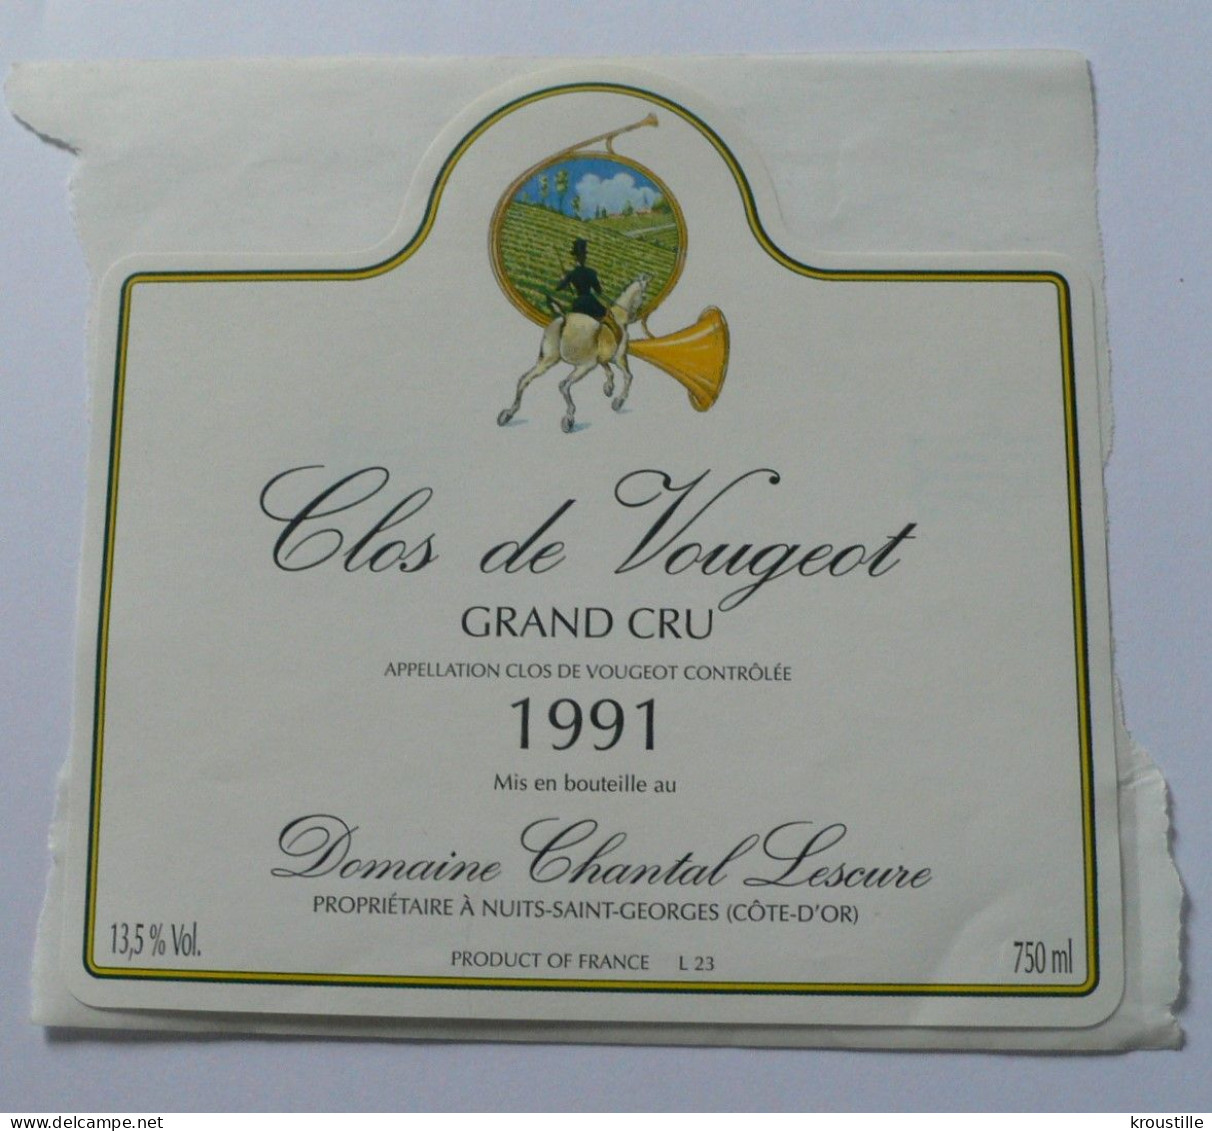 CLOS DE VOUGEOT - GRAND CRU 1991 - ETIQUETTE NEUVE - THEME CHASSE - Caza